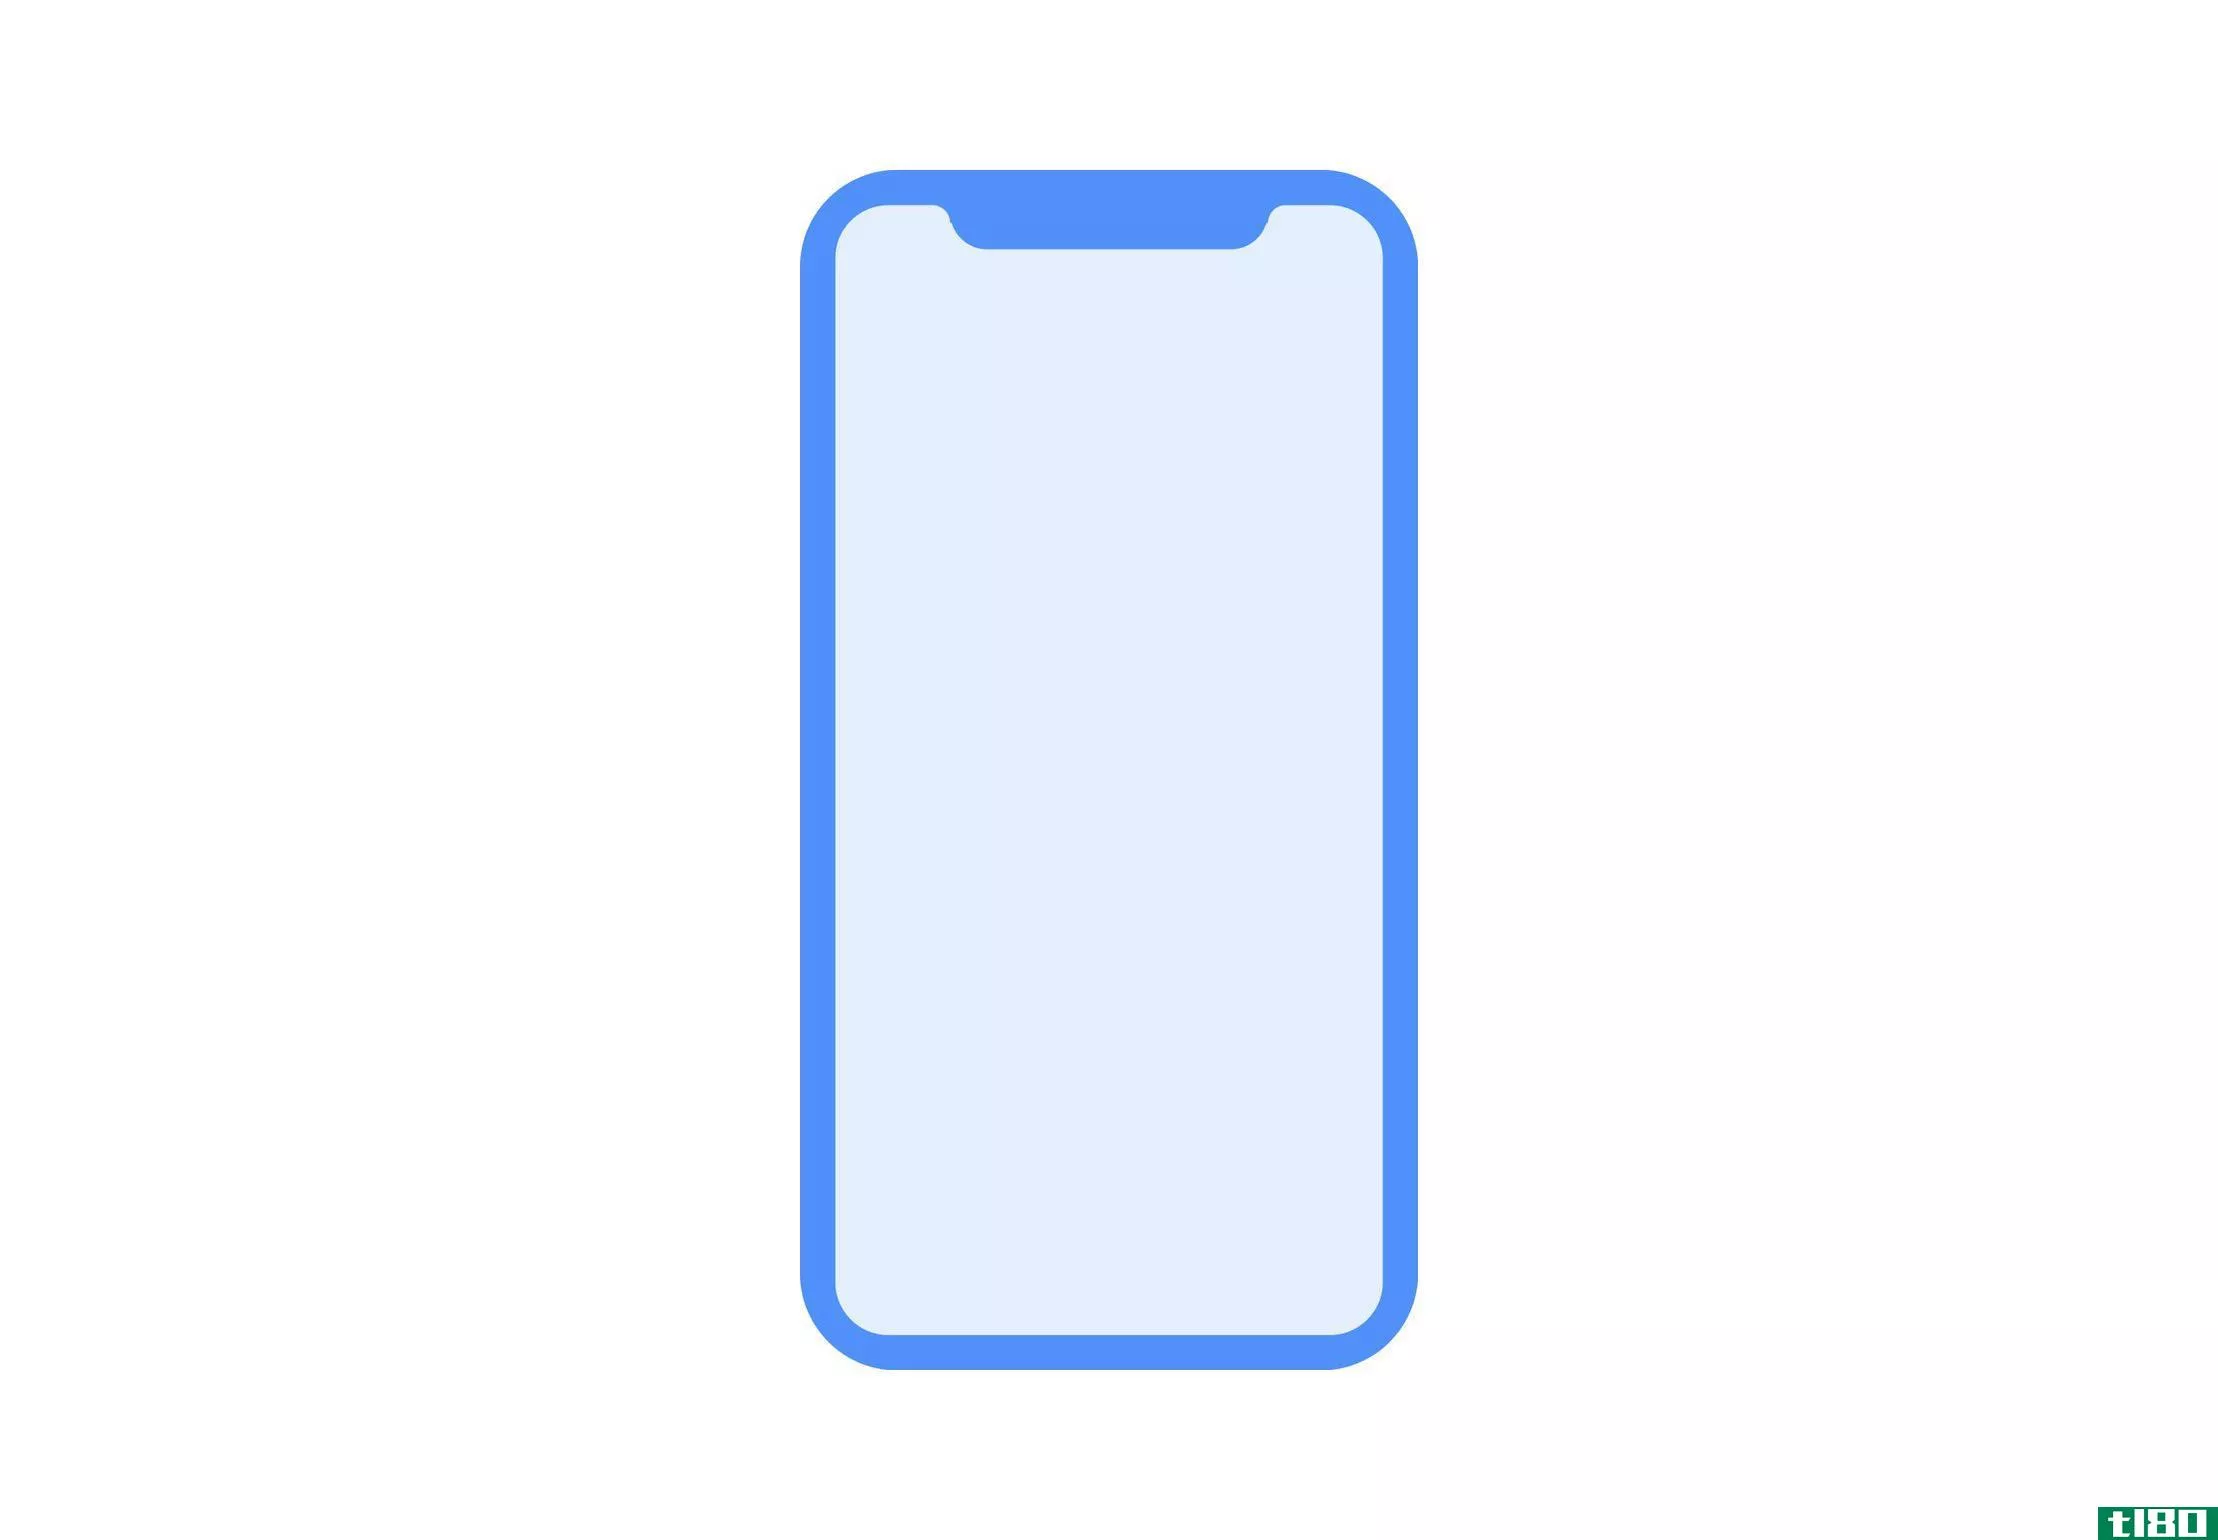 iPhone8的dock可能更像新的ipad